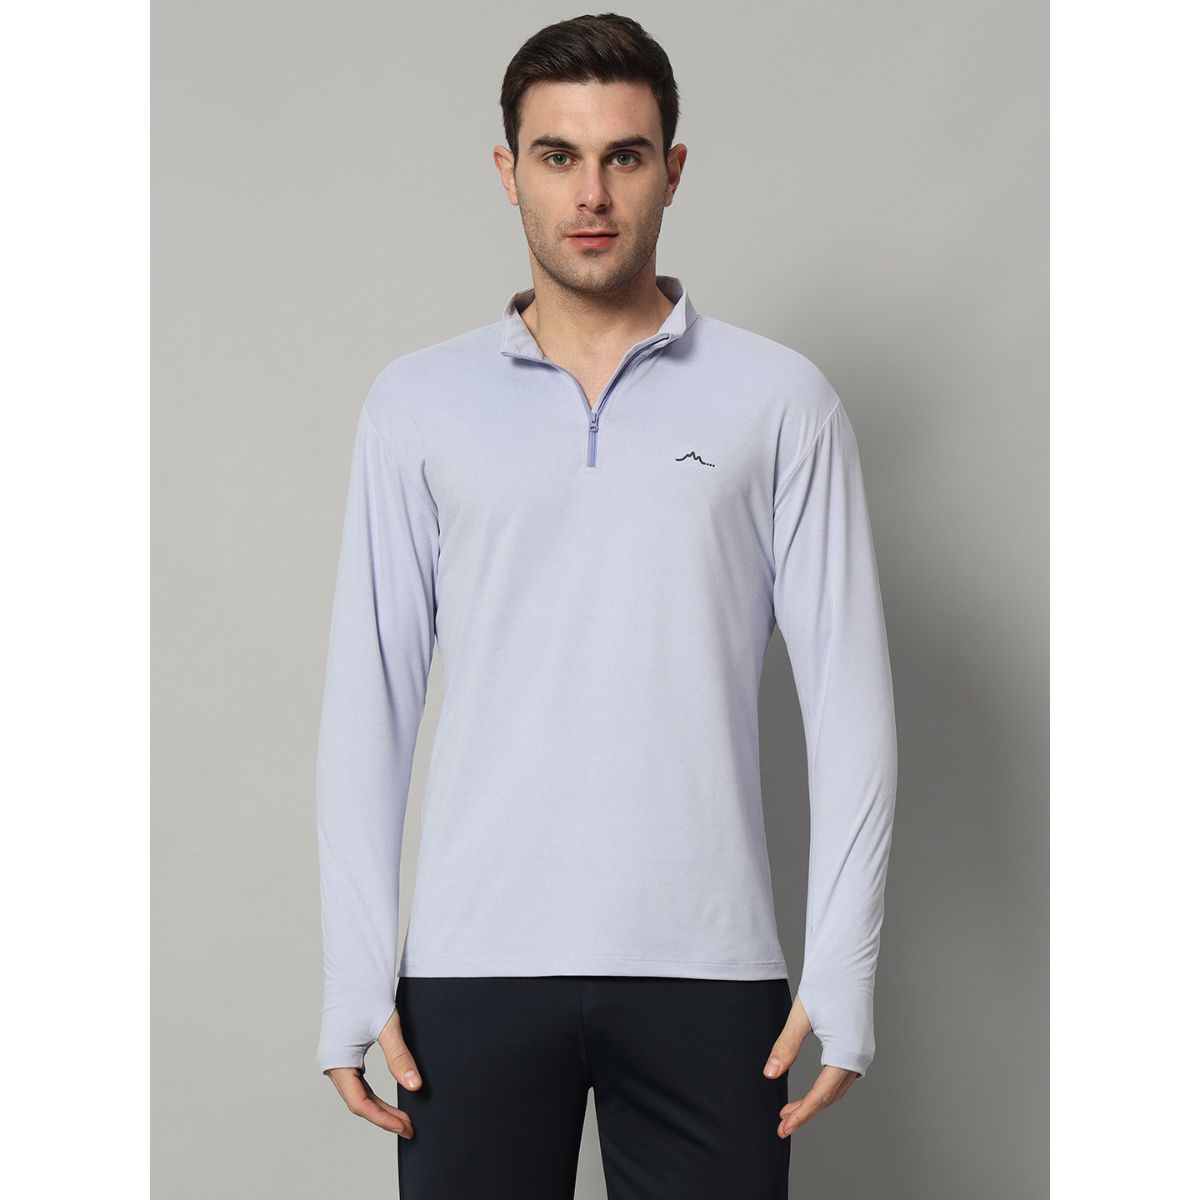 Men's Nomadic Full Sleeves T-Shirt / Baselayer - Lavender 5